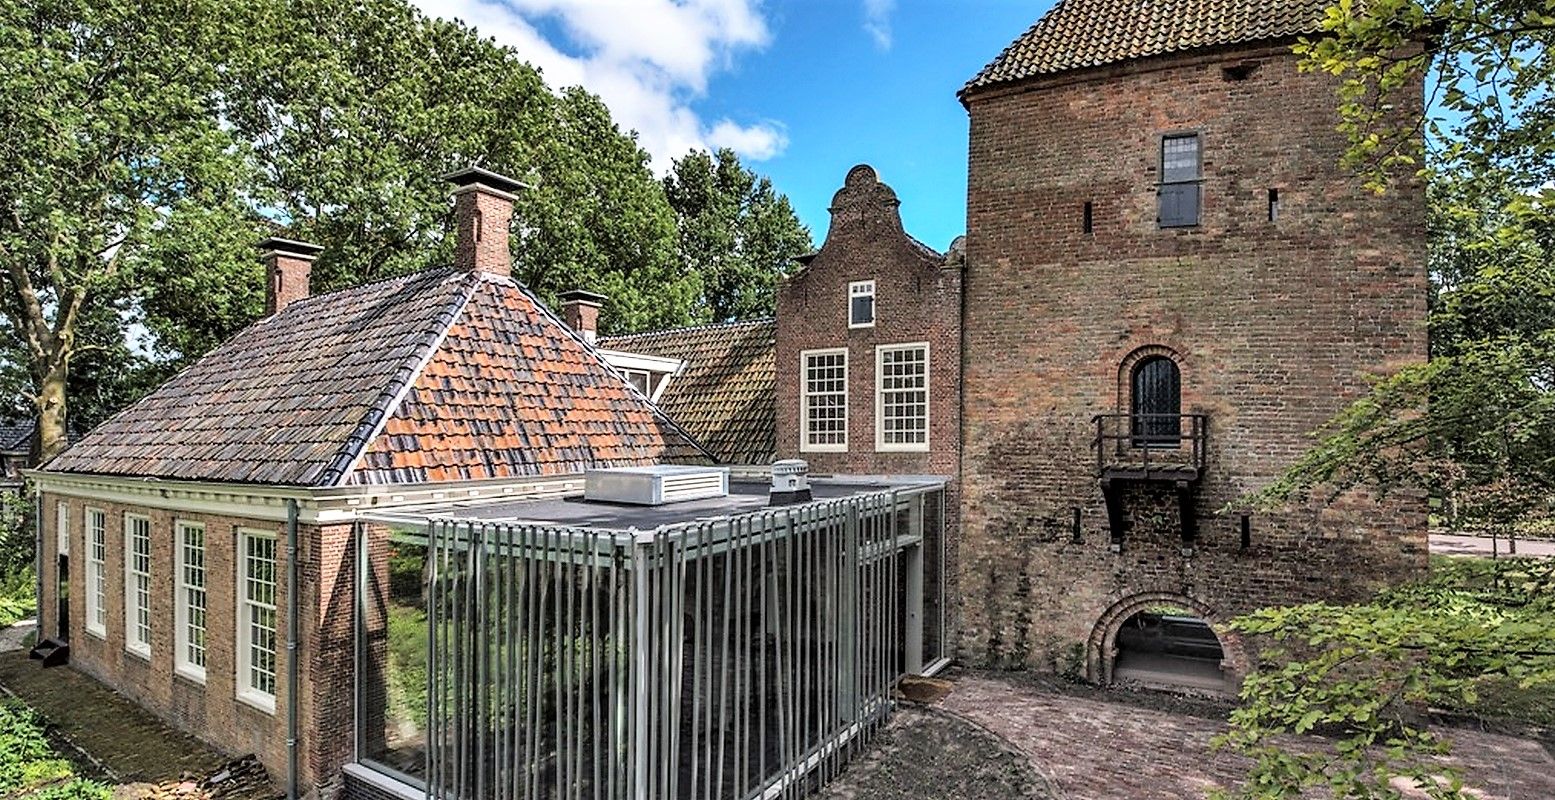 De Schierstins met de vroeg-middeleeuwse toren en aangebouwde gebouwen. Foto: De Schierstins © Frans de Vries